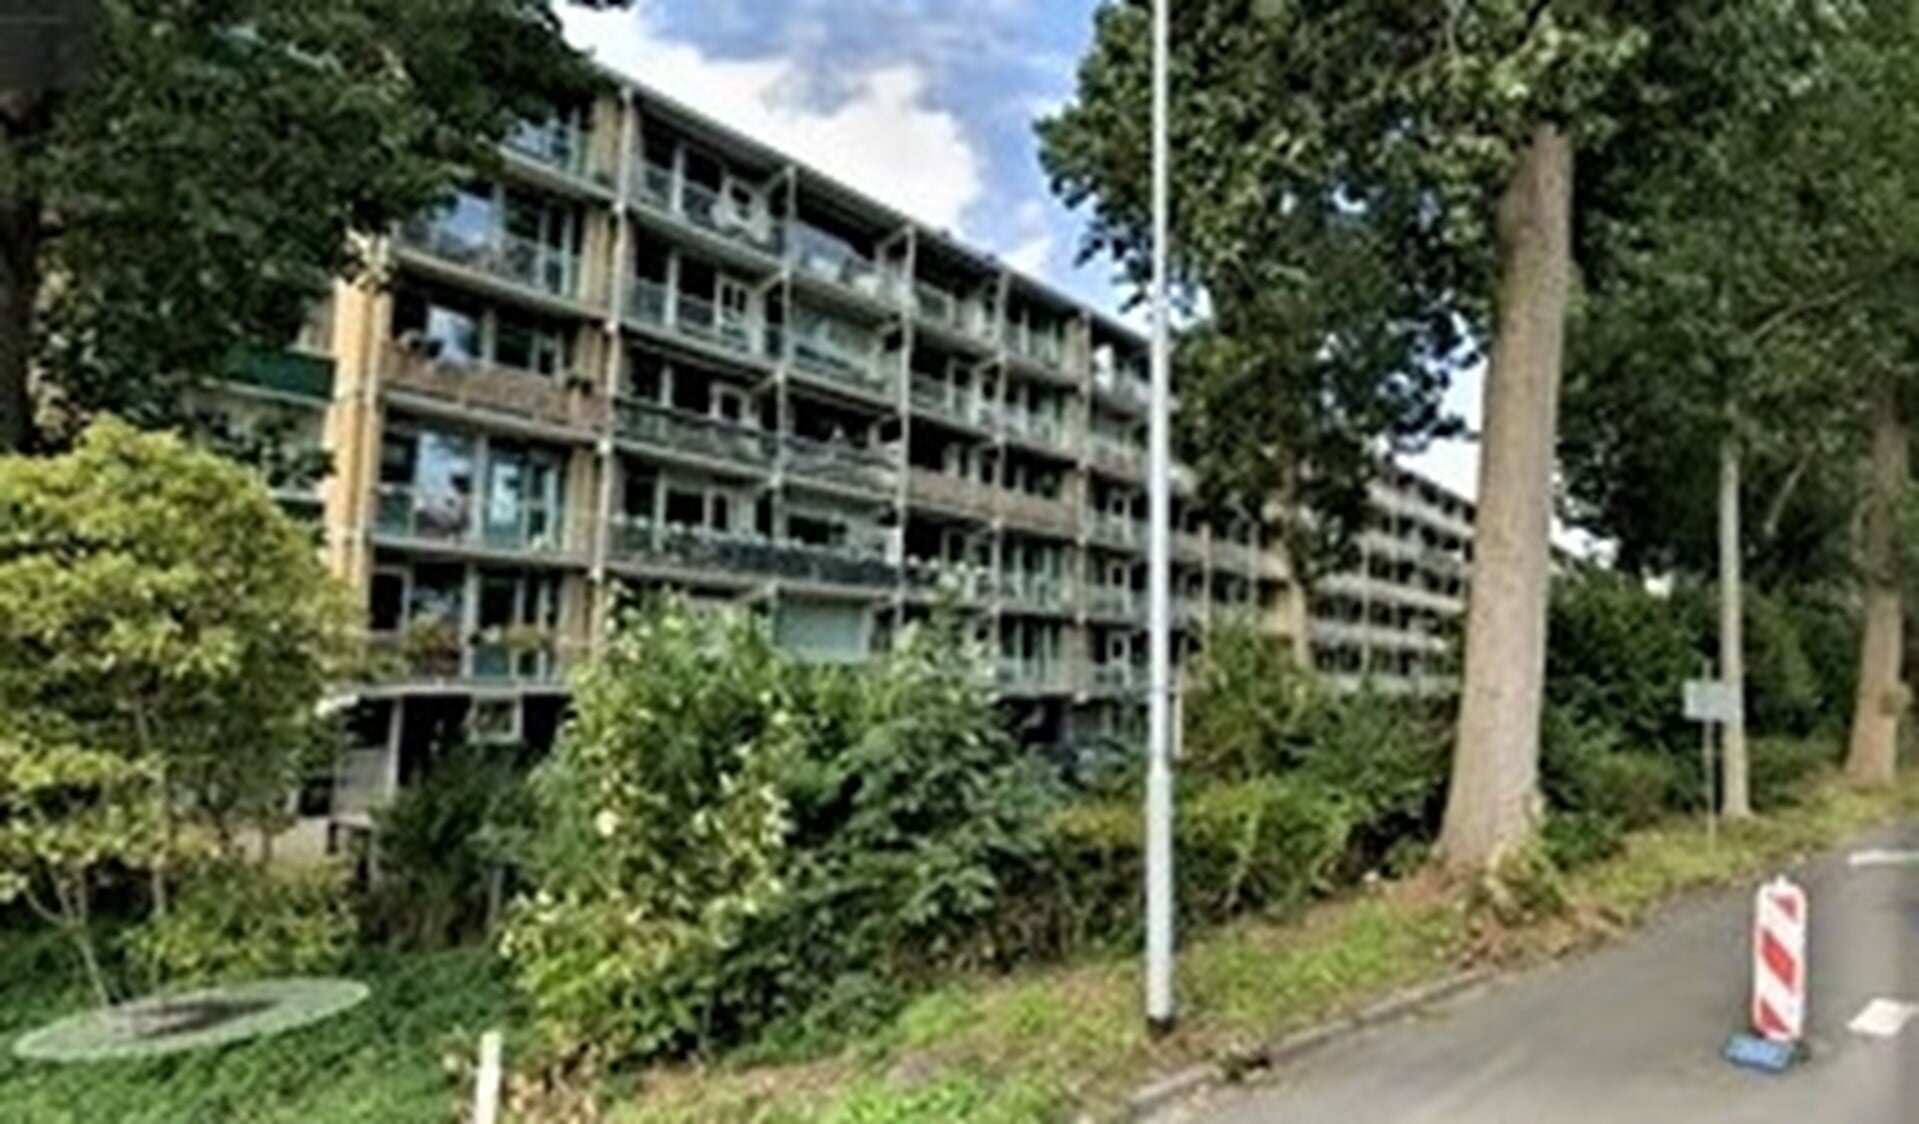 De flats aan de Burgemeester Keijzerlaan langs de Noordsingel in Leidschendam (foto: Streetview).